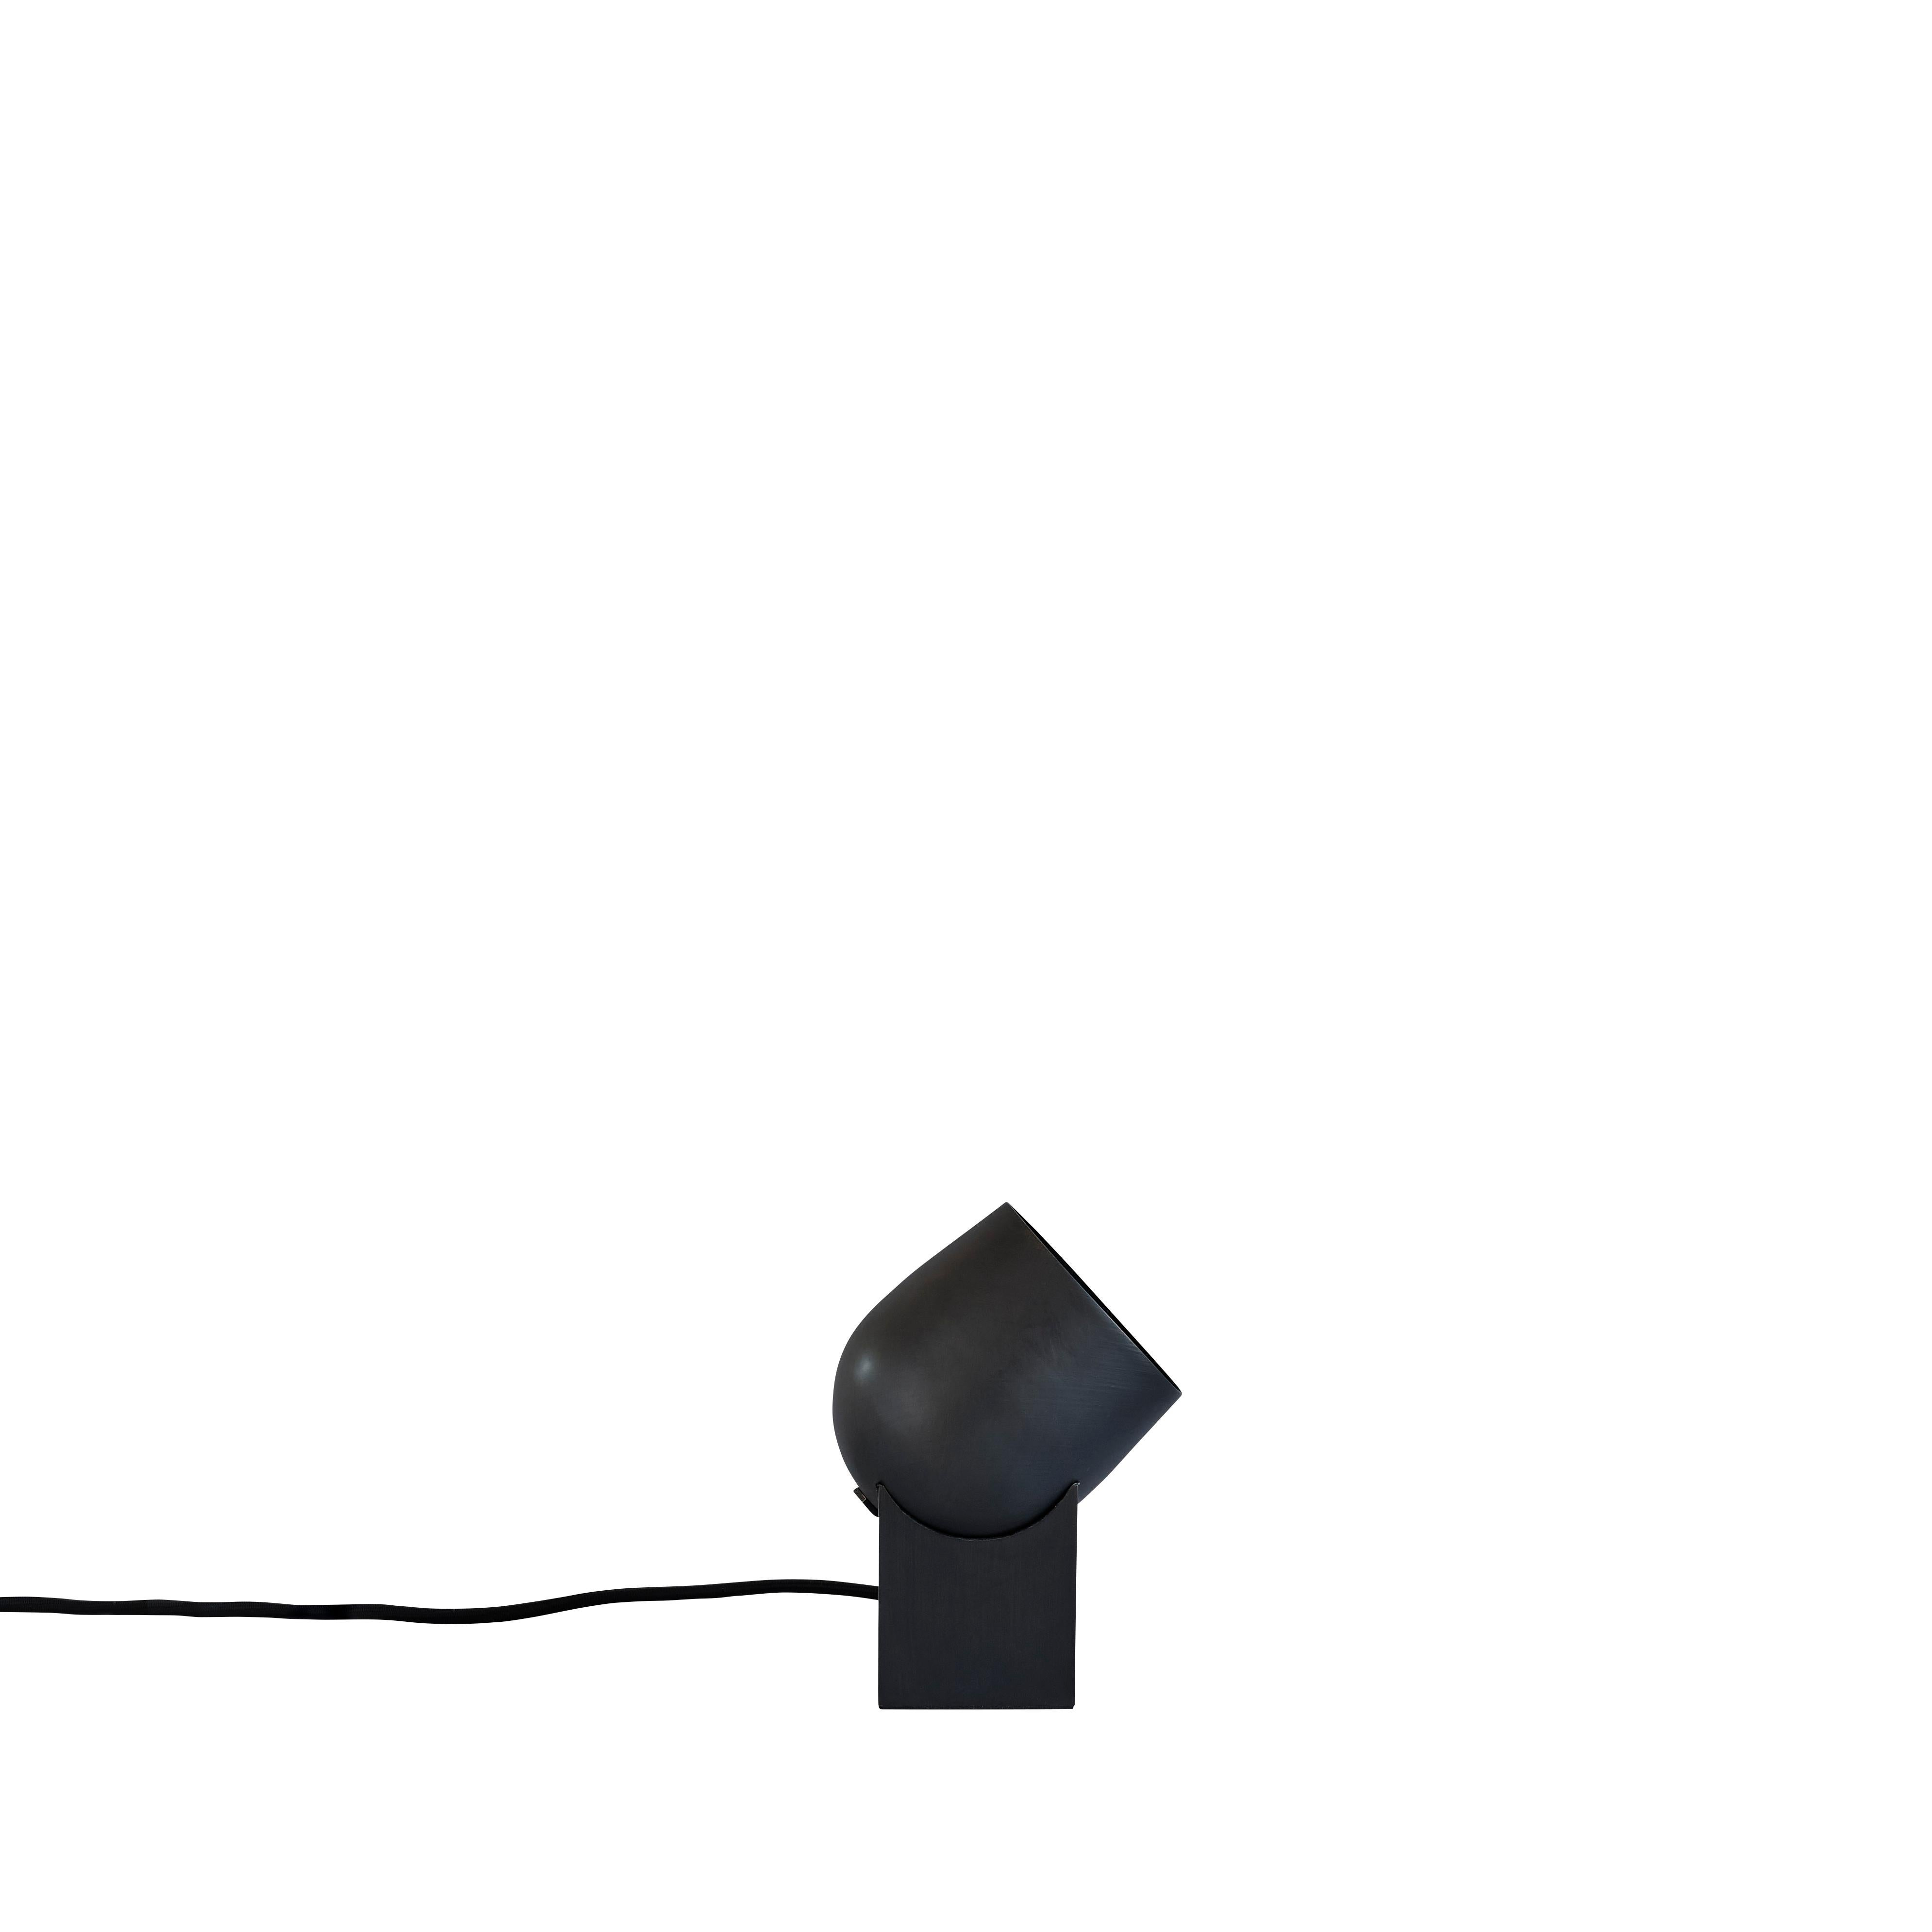 Lampe de table Pivot de 101 Copenhagen
Conçu par Kristian Sofus Hansen et Tommy Hyldahl.
Dimensions : L 10,5 x l 10,5 x H 19 cm
Longueur du câble : 190 CM

Matériaux : Métal : Métal plaqué / Noir brûlé
Câble : Câble recouvert de tissu avec variateur